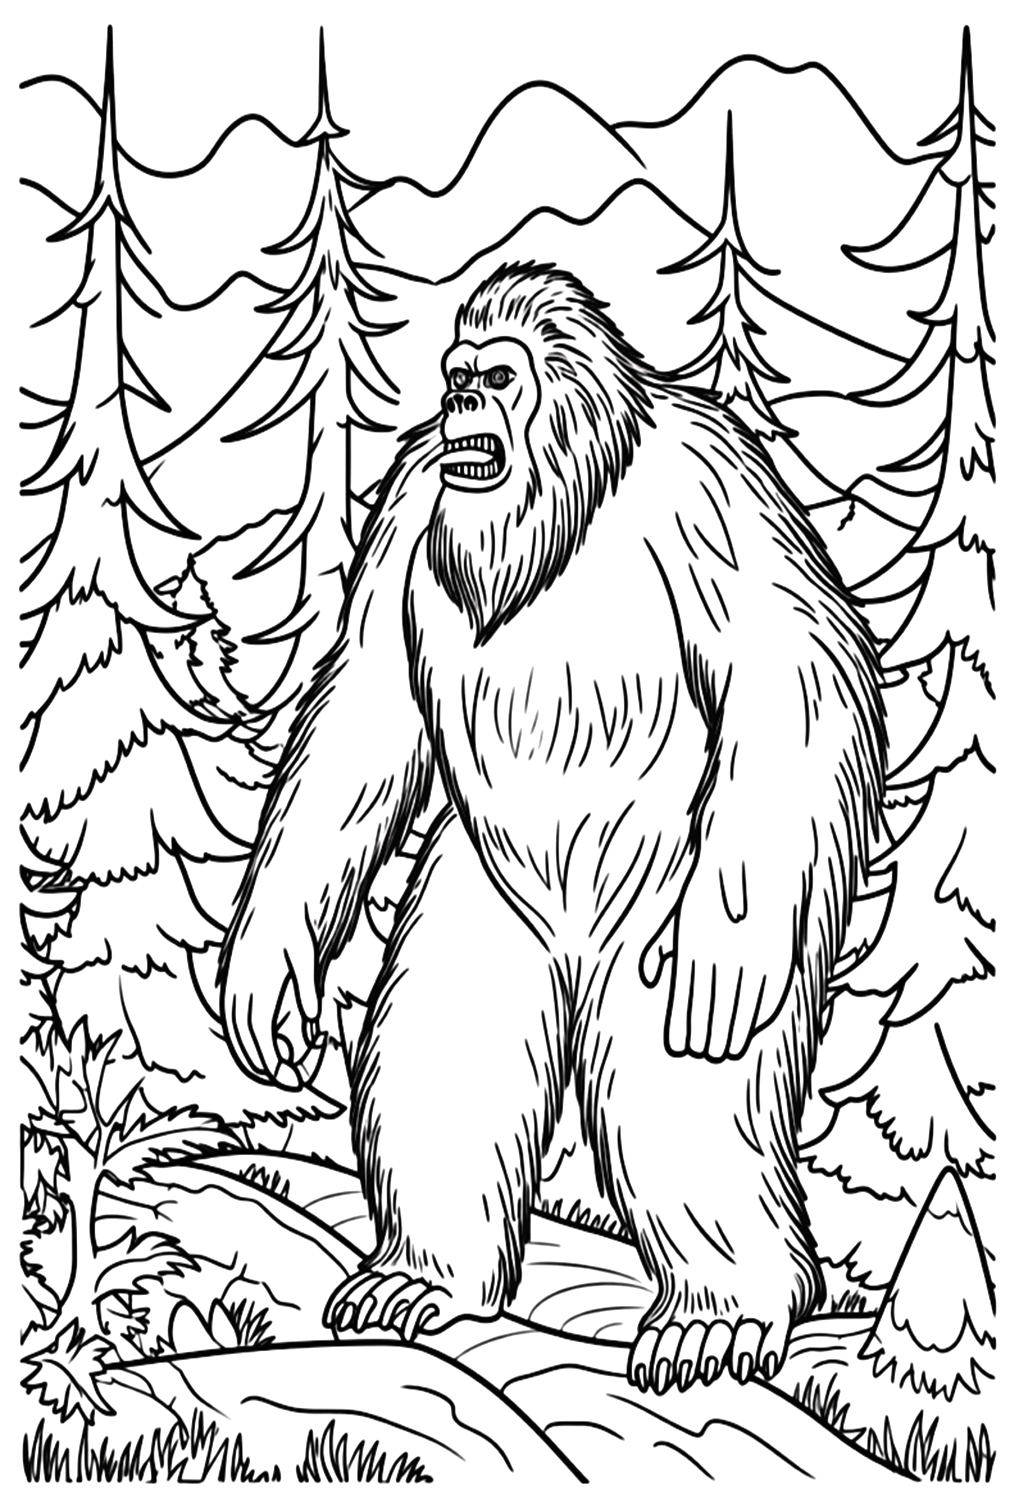 Sasquatch-Malseite von Bigfoot